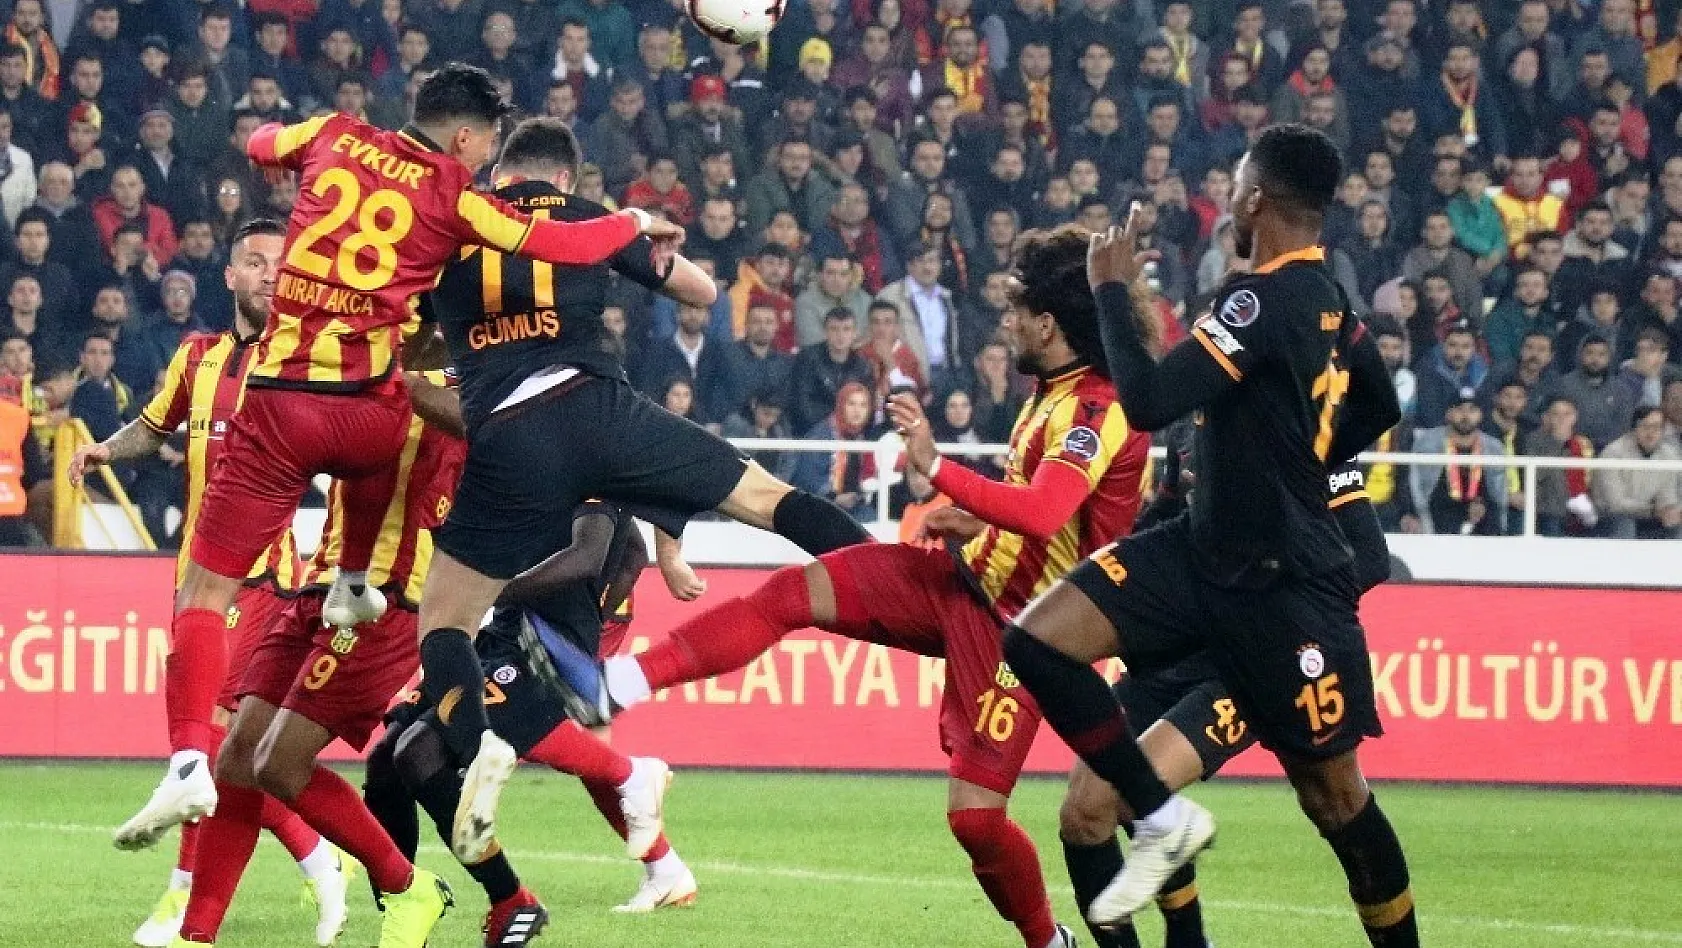 Spor Toto Süper Lig: Evkur Yeni Malatyaspor: 2 - Galatasaray: 0 (Maç sonucu) 